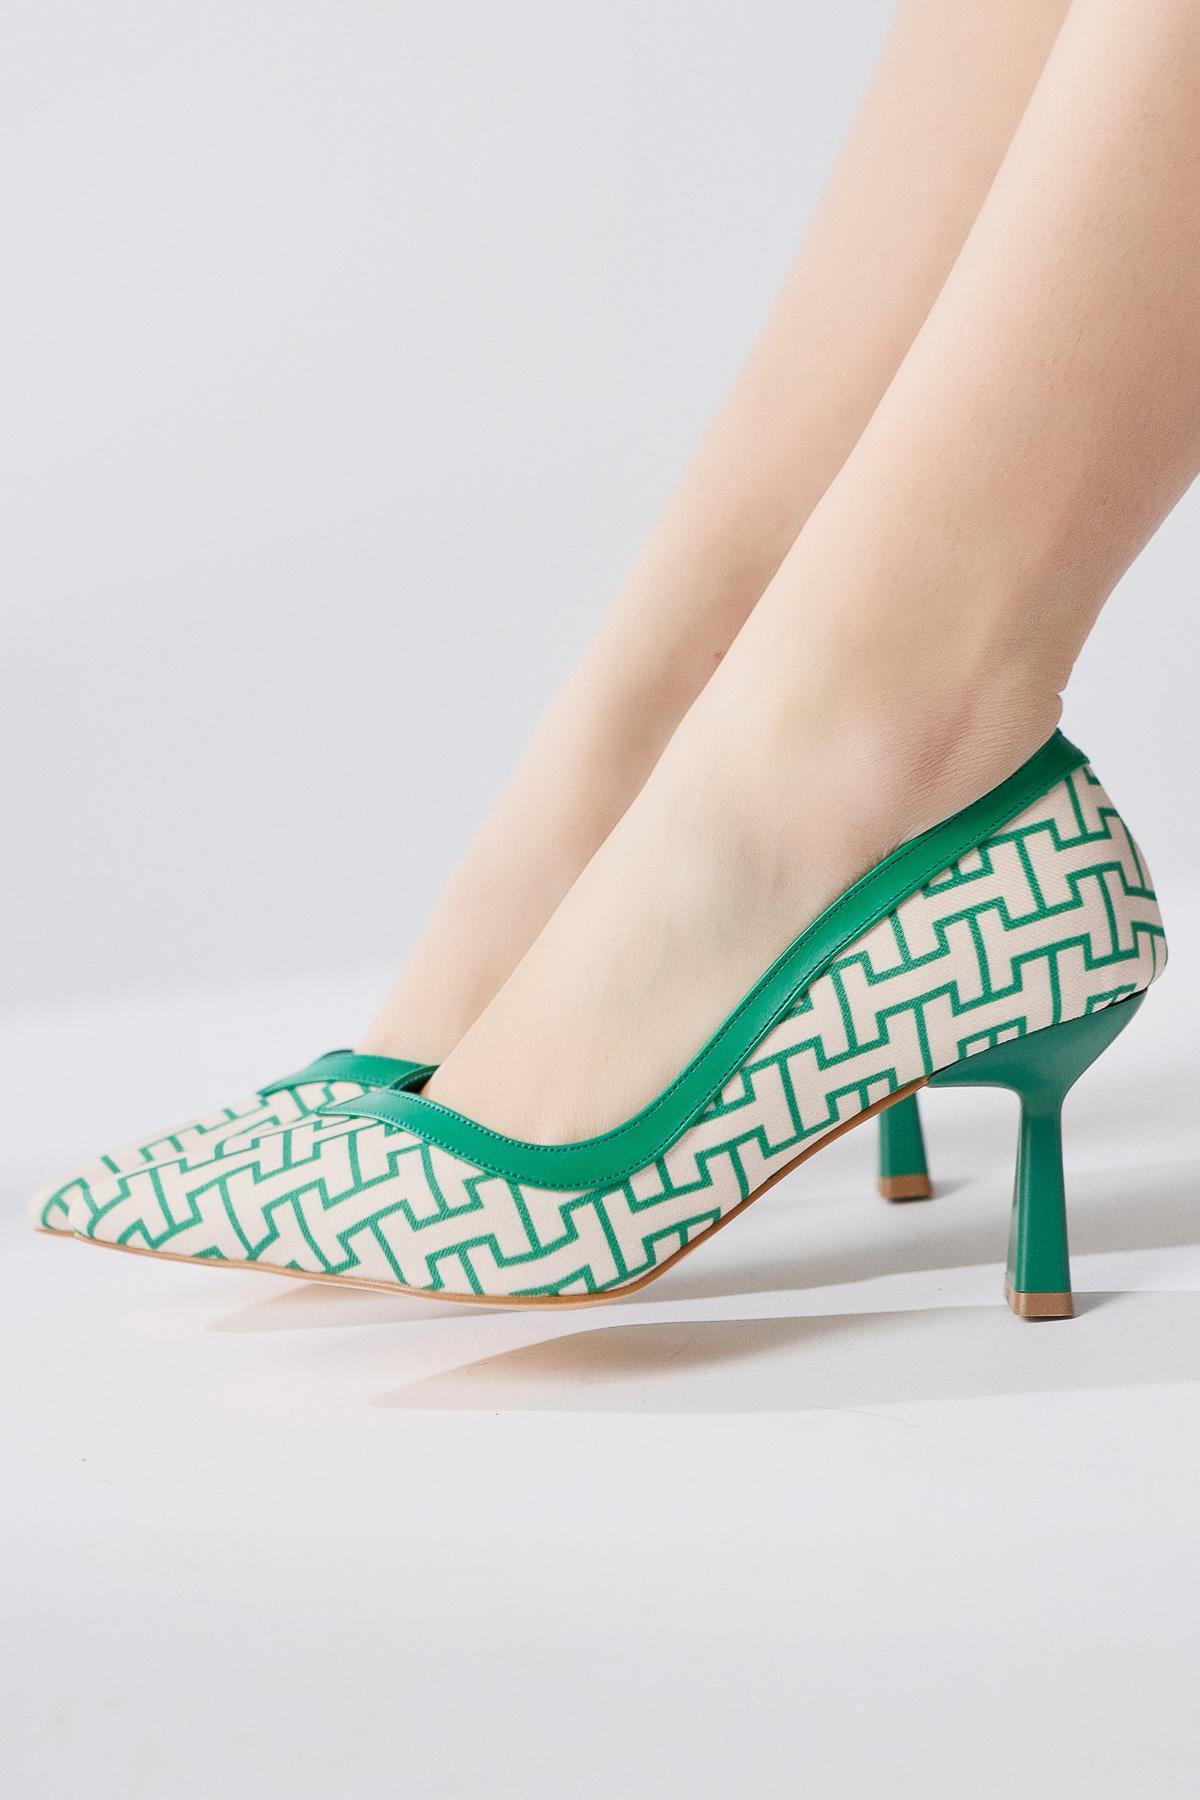 Lottis Yeşil Geometrik Desenli Siviri Burunlu Topuklu Ayakkabı | Limoya.com  ile Modayı Keşfet!